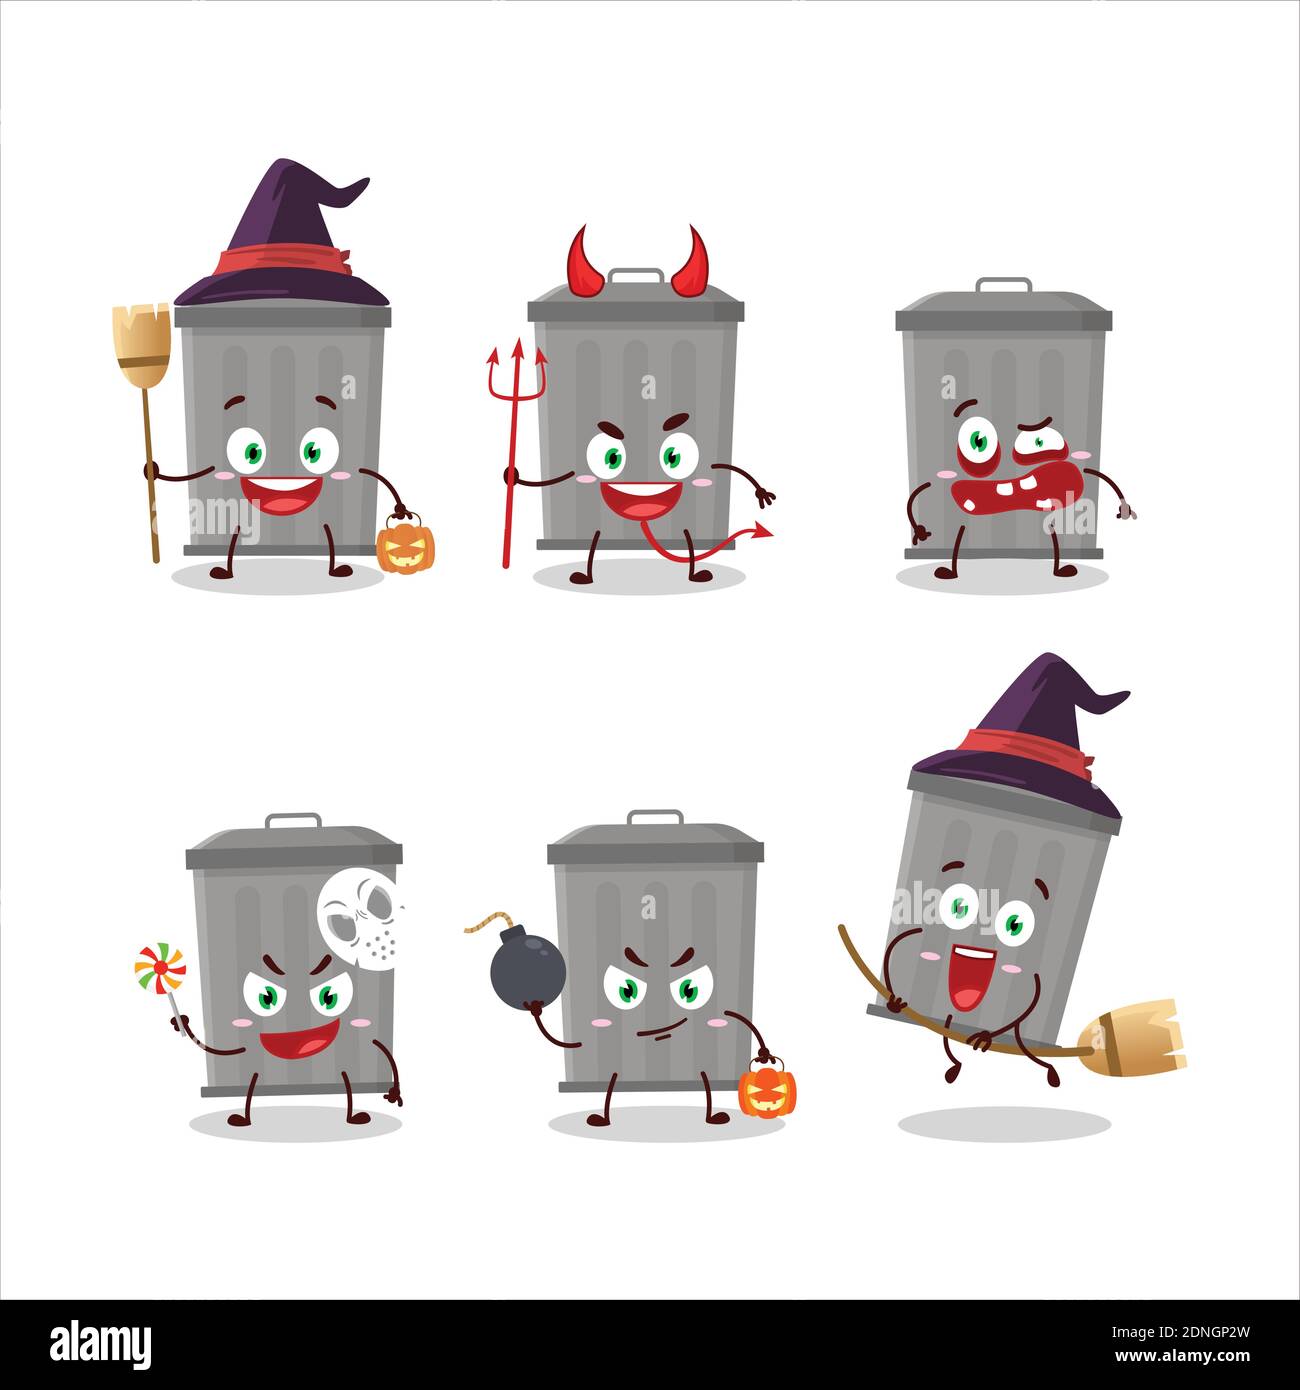 Emoticones de la expresión de Halloween con carácter de dibujos animados de la papelera. Ilustración vectorial Ilustración del Vector